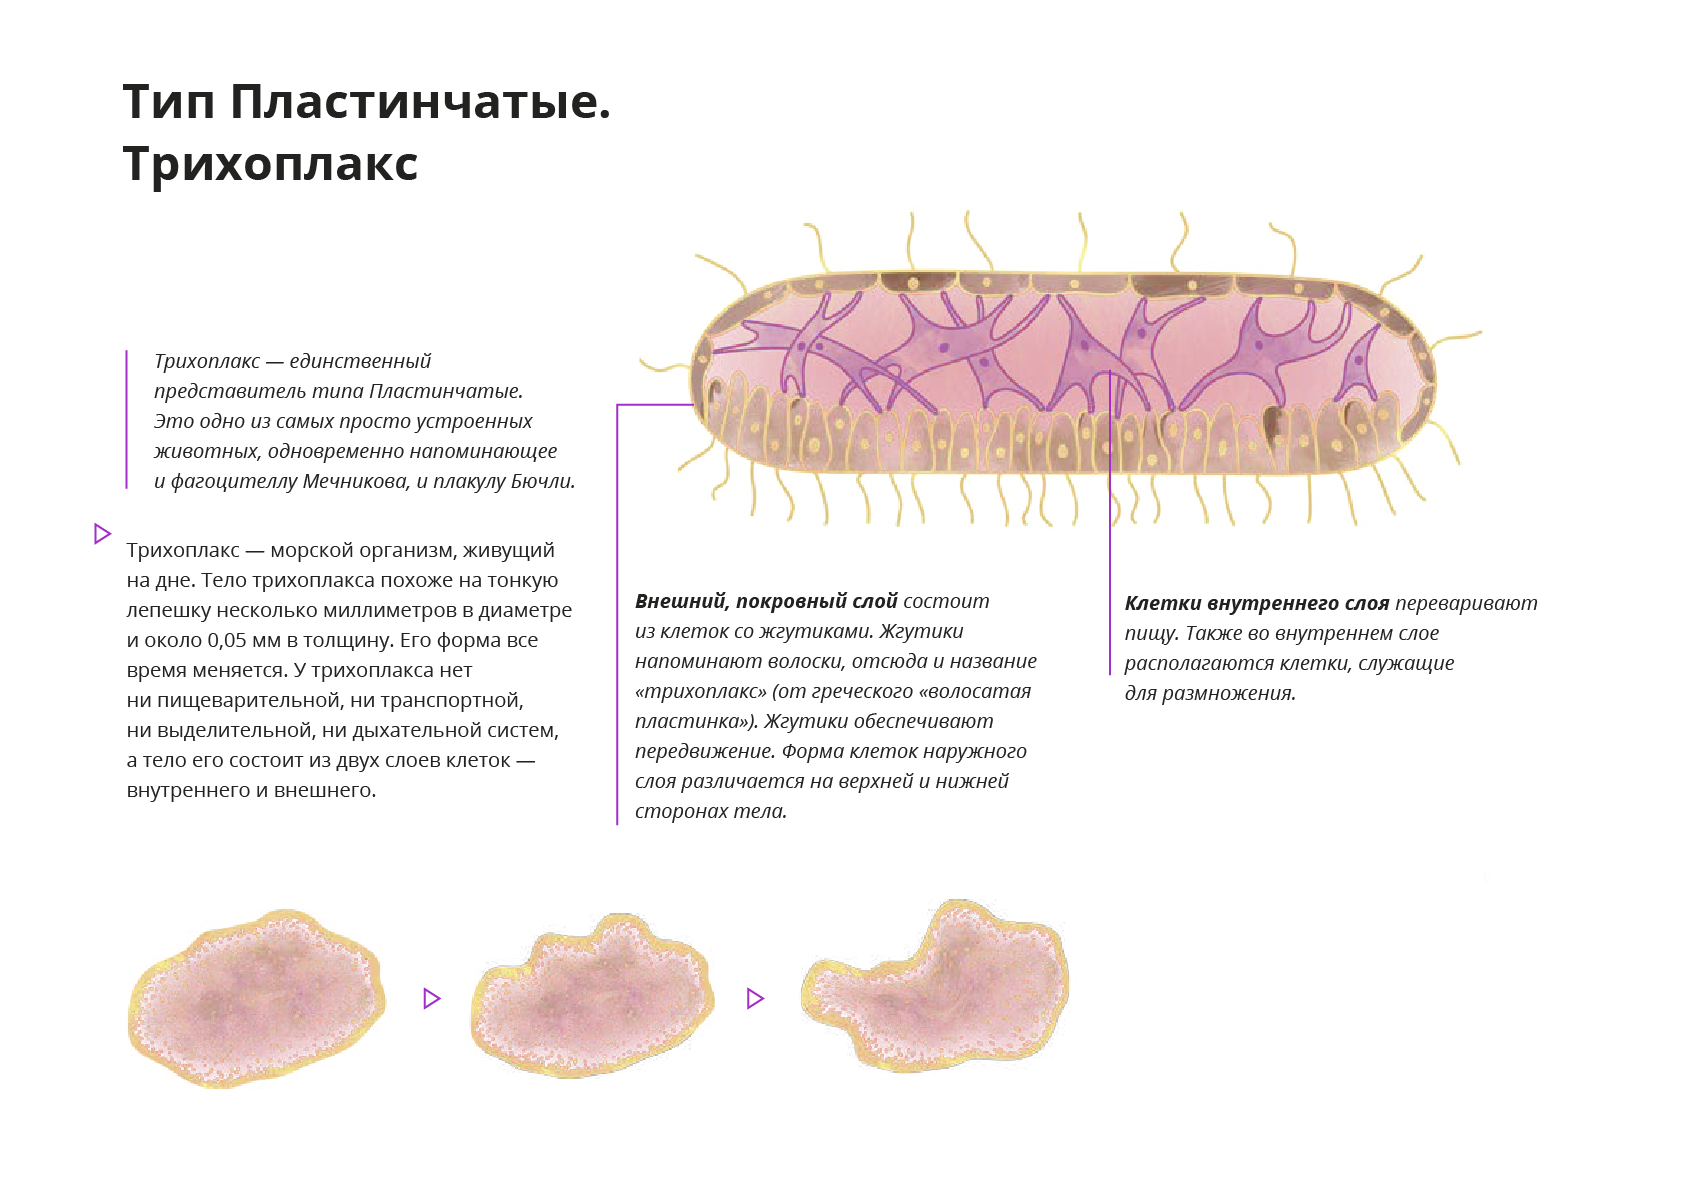 Пластинчатые клетки. Тип пластинчатые (трихоплакс). Тип пластинчатые (Placozoa). Тип пластинчатые пищеварительная система. Трихоплакс препарат.